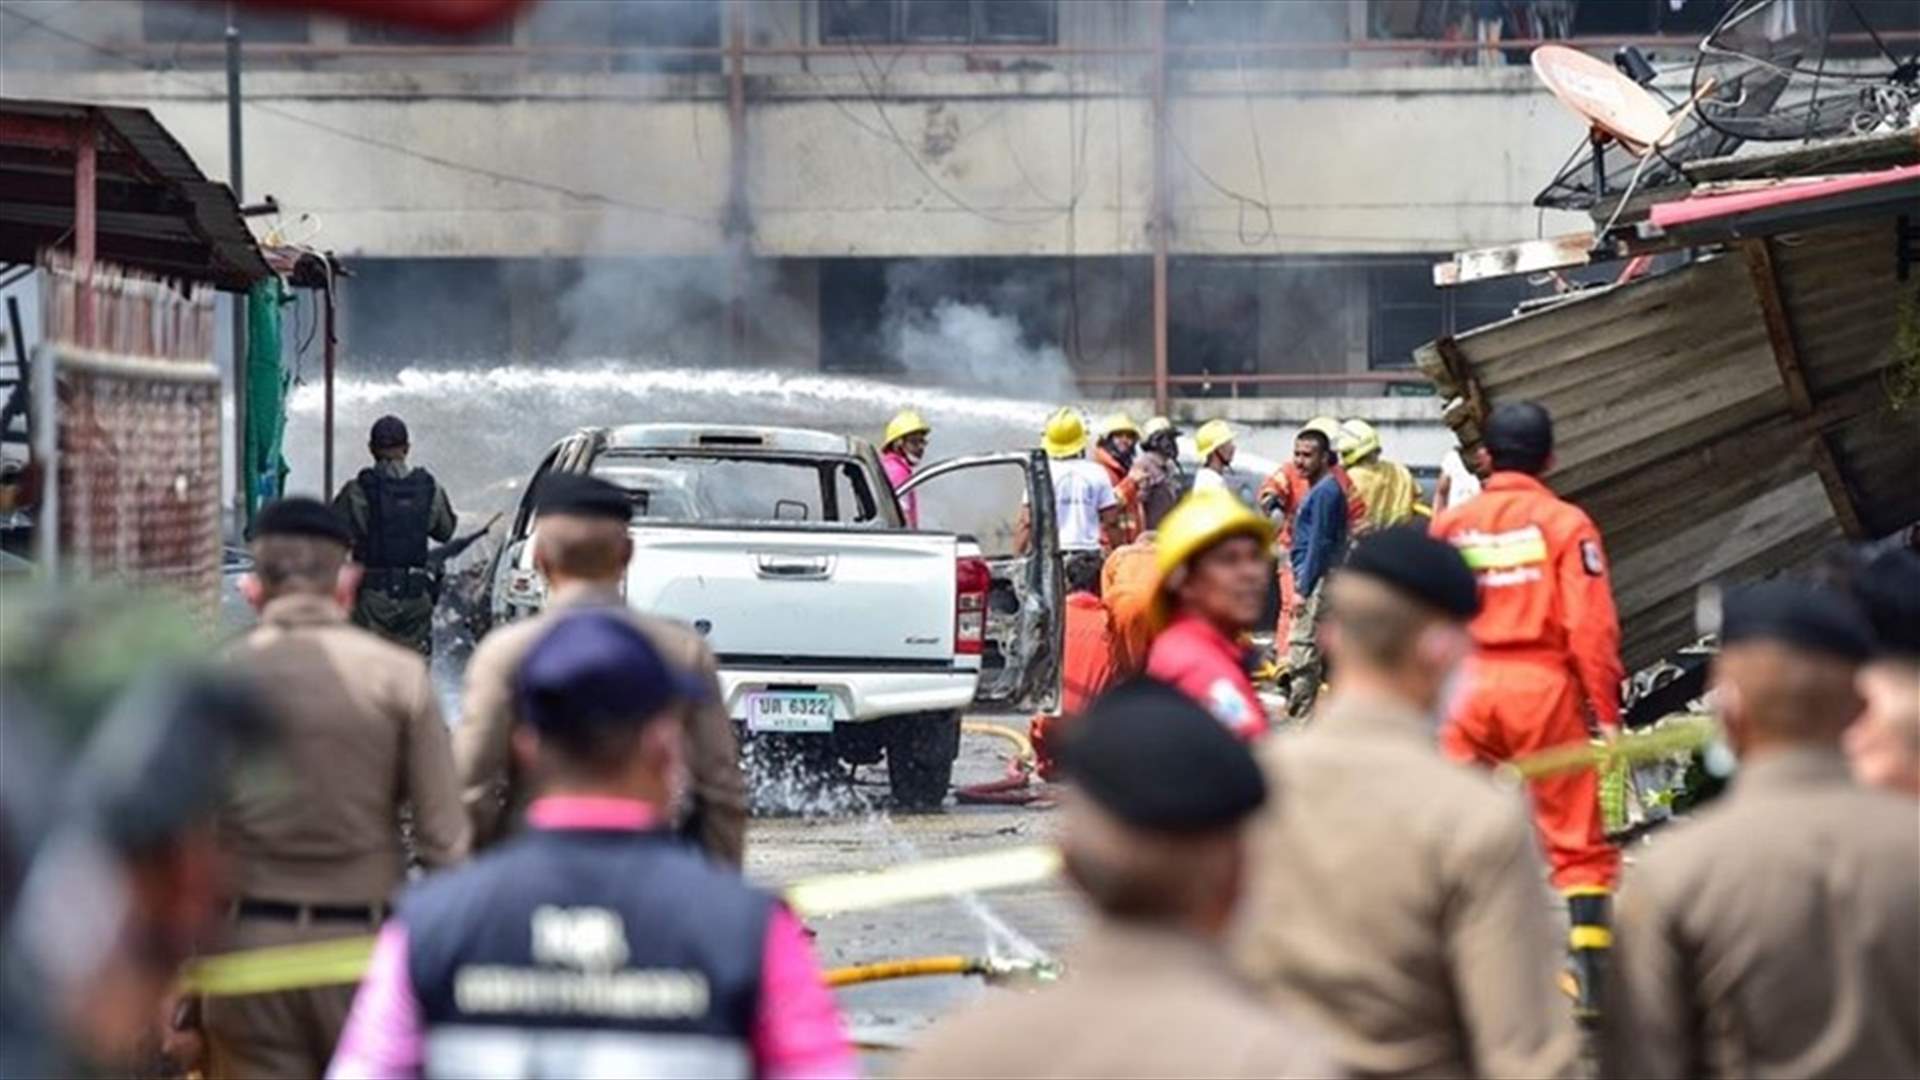 قتيل في انفجار سيارة مفخخة في جنوب تايلاند